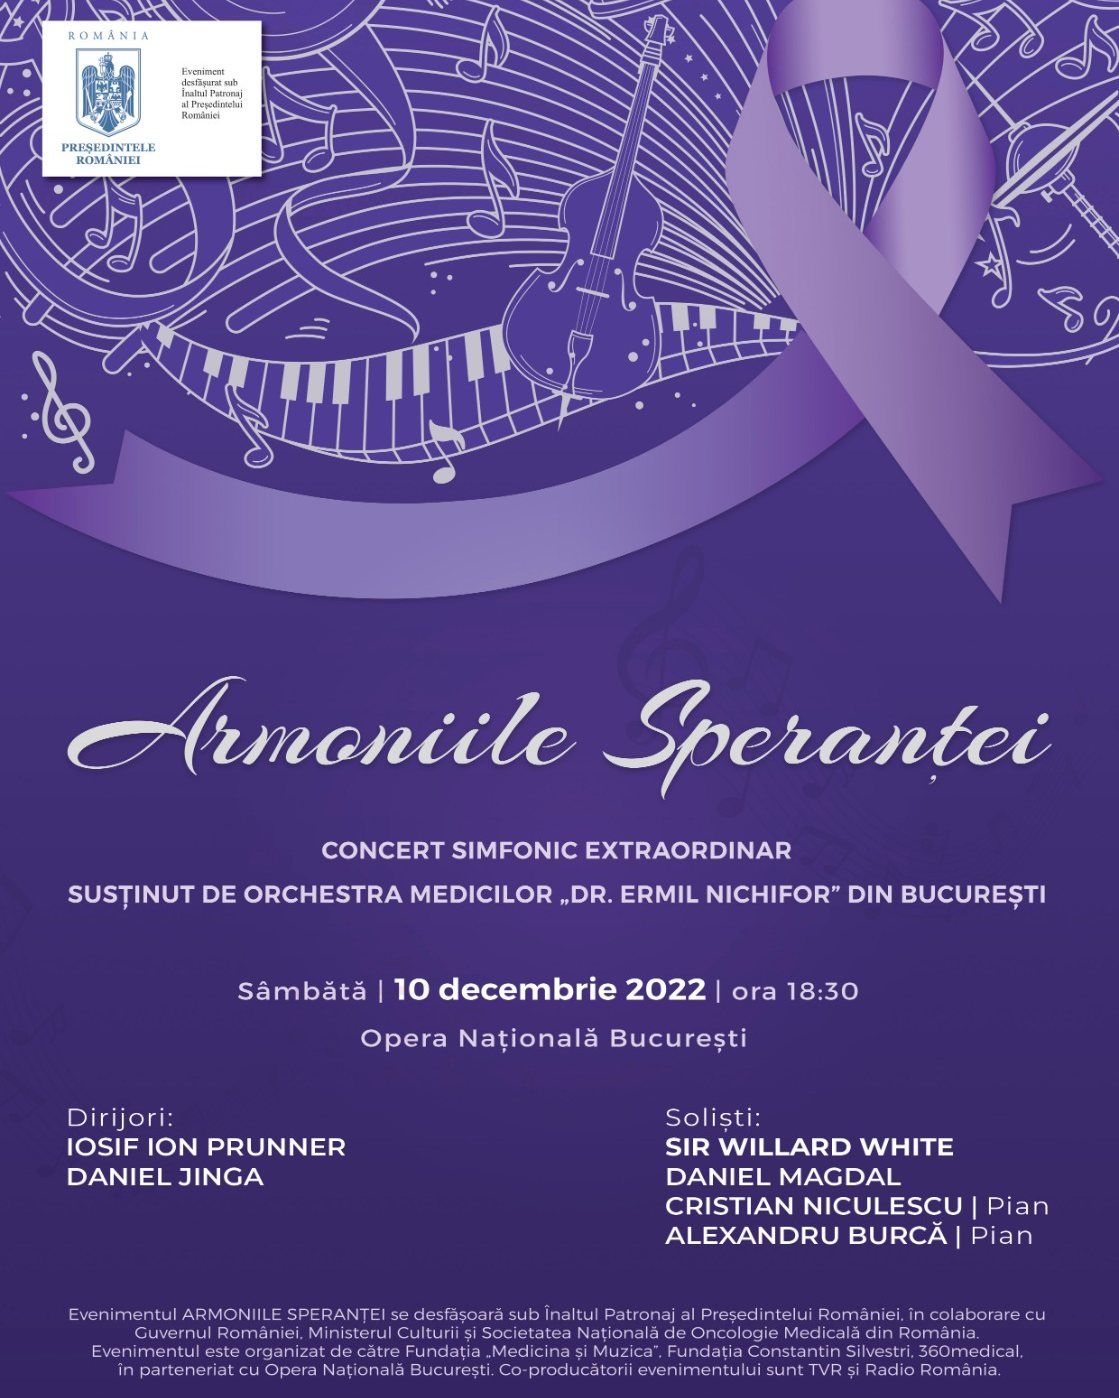 Concertul Extraordinar al Orchestrei Medicilor „Dr. Ermil Nichifor” are loc sâmbătă